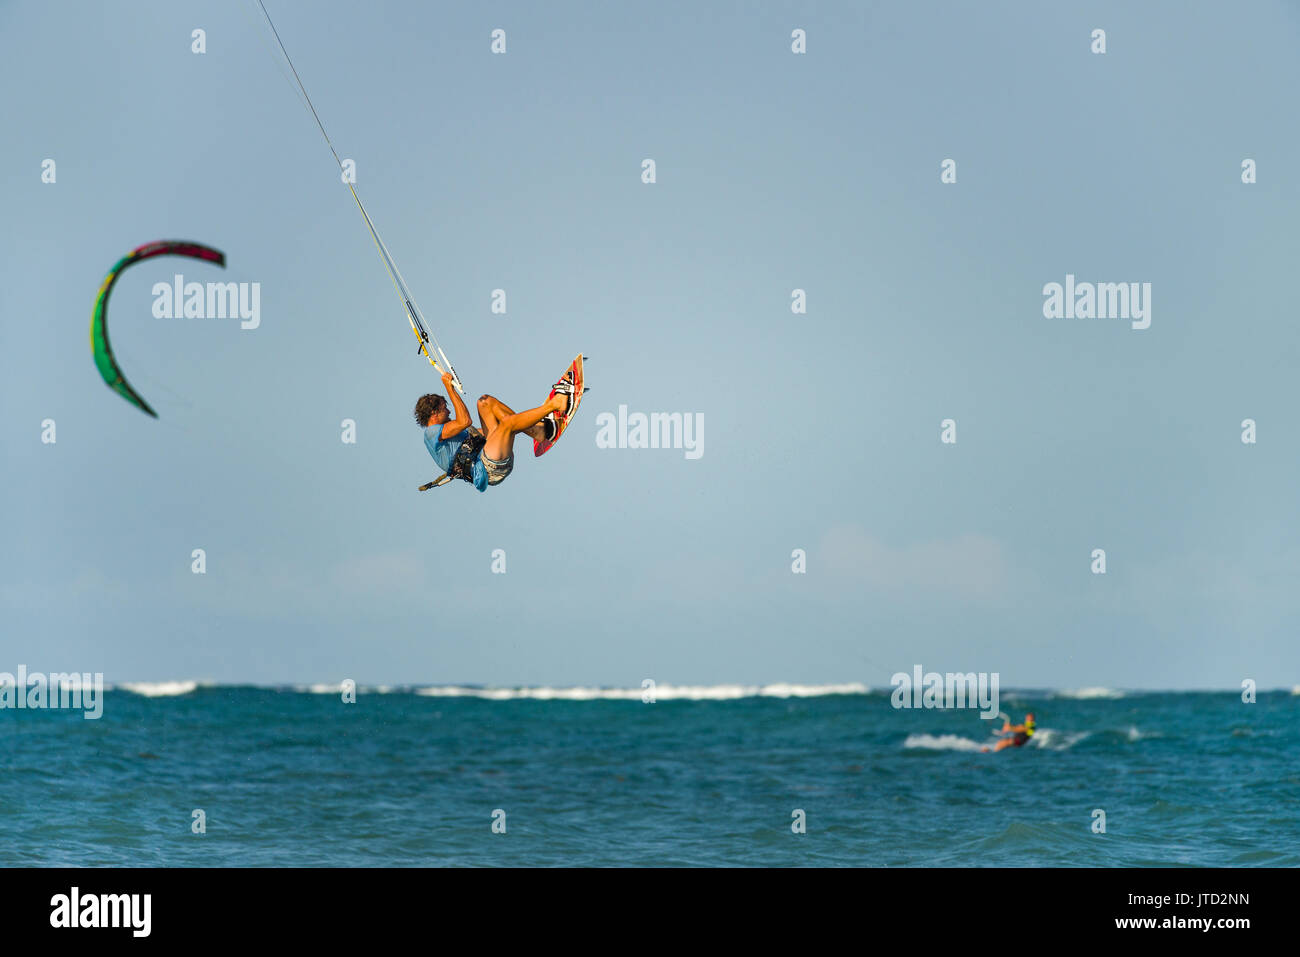 Kite surfer in aria con altri kitesurfer e kite in background in oceano, Diani, Kenya Foto Stock